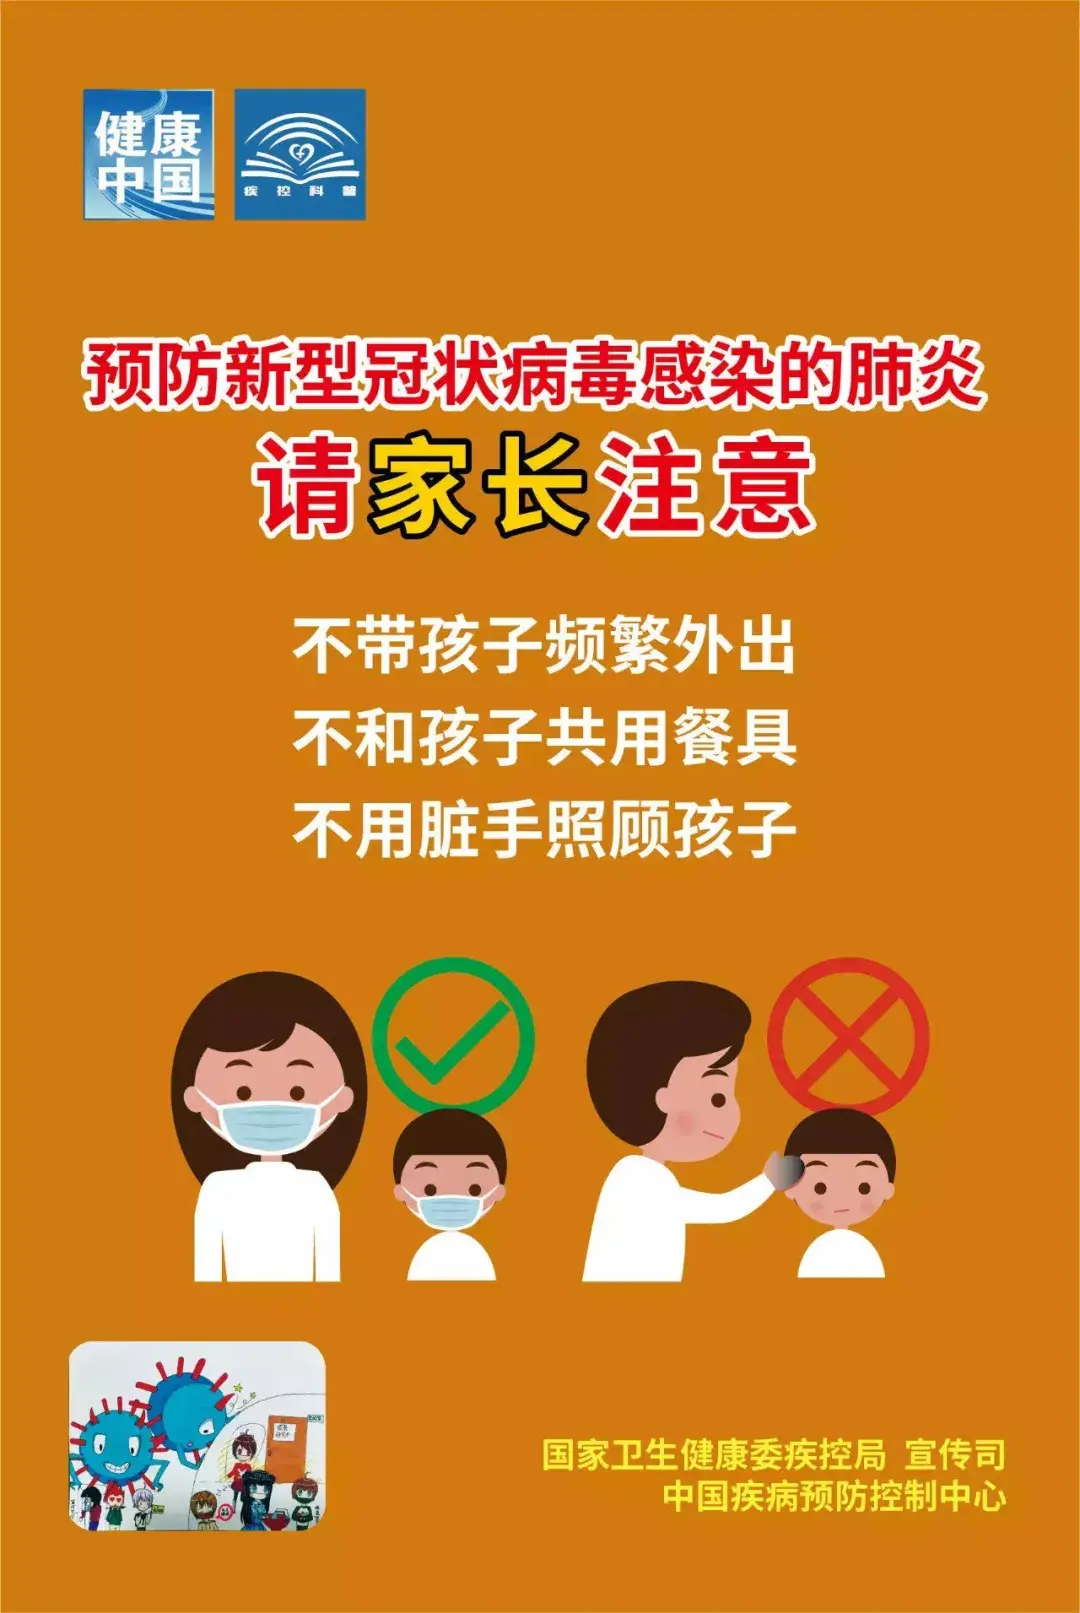 今日湖南省教育厅发布了《关于进一步加强学校新冠肺炎疫情防控工作的